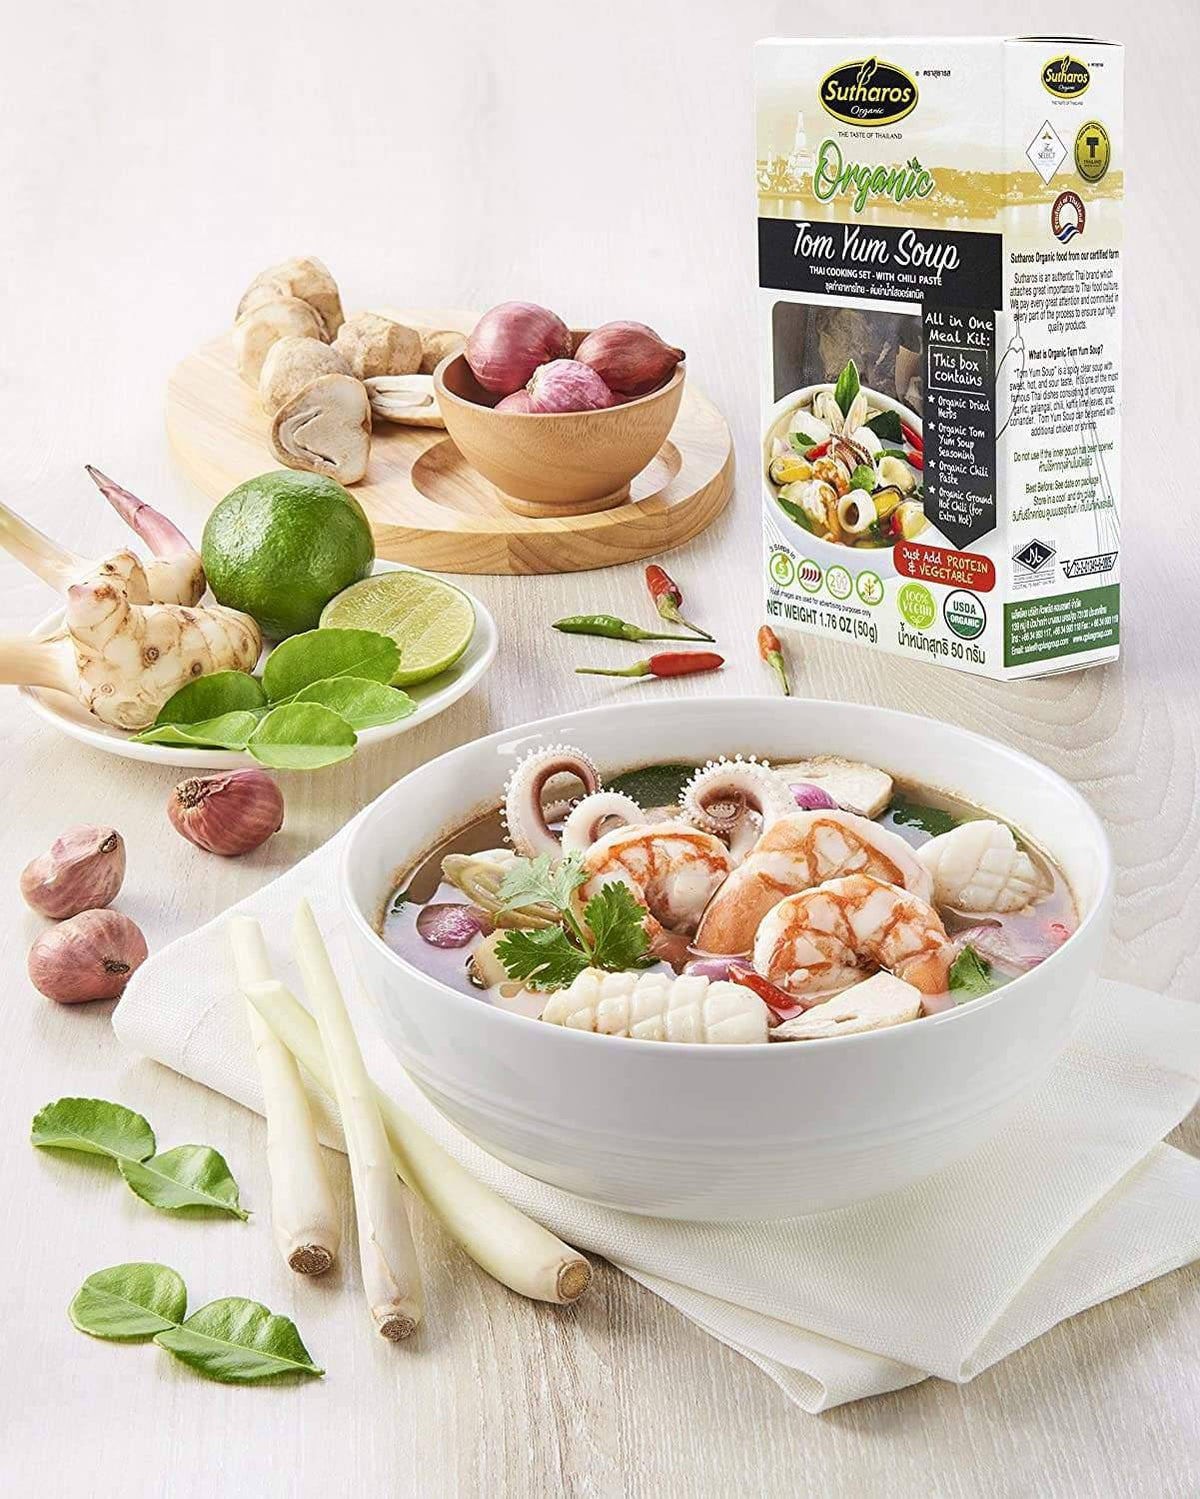 Sutharos Organic Tom Yum Soup Thai Meal Kit exclusive at Tastermonial